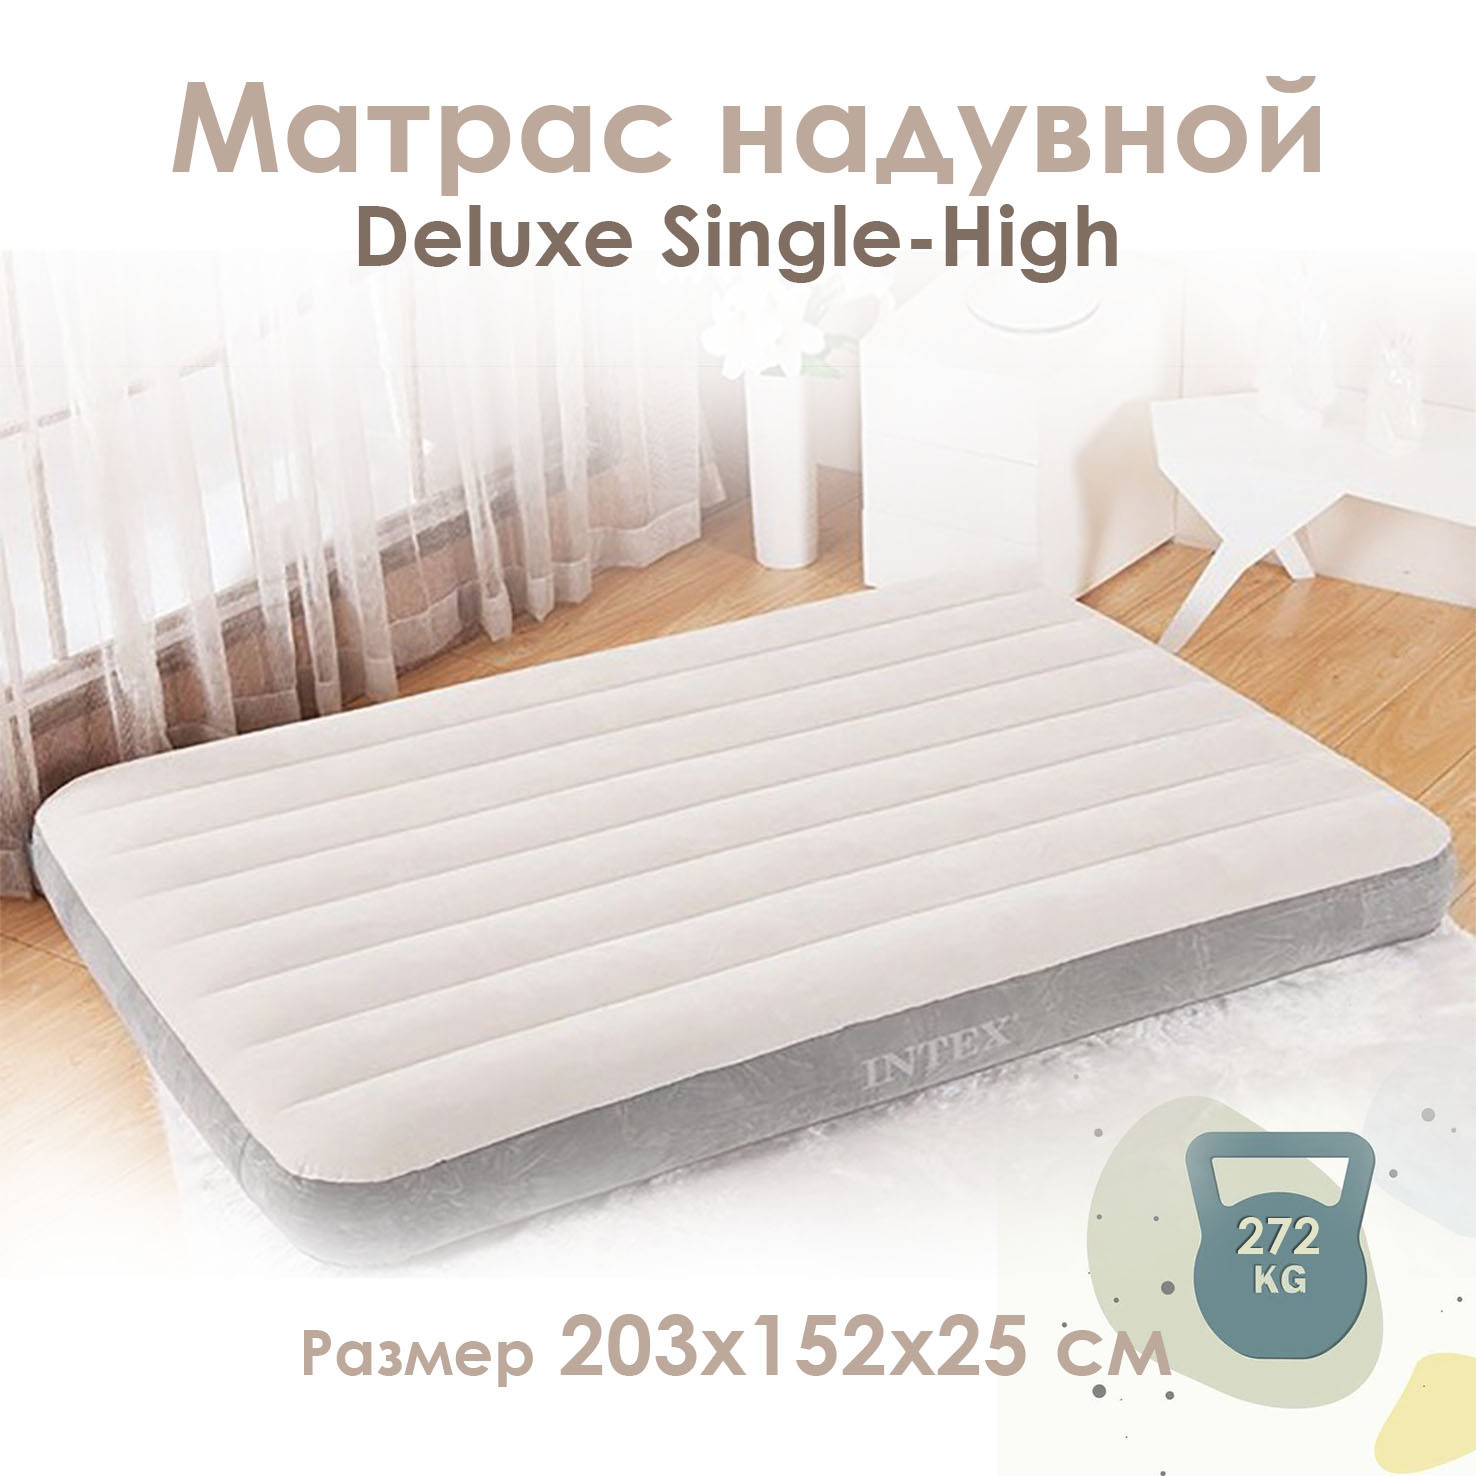 Матрас надувной intex матрас 203х152